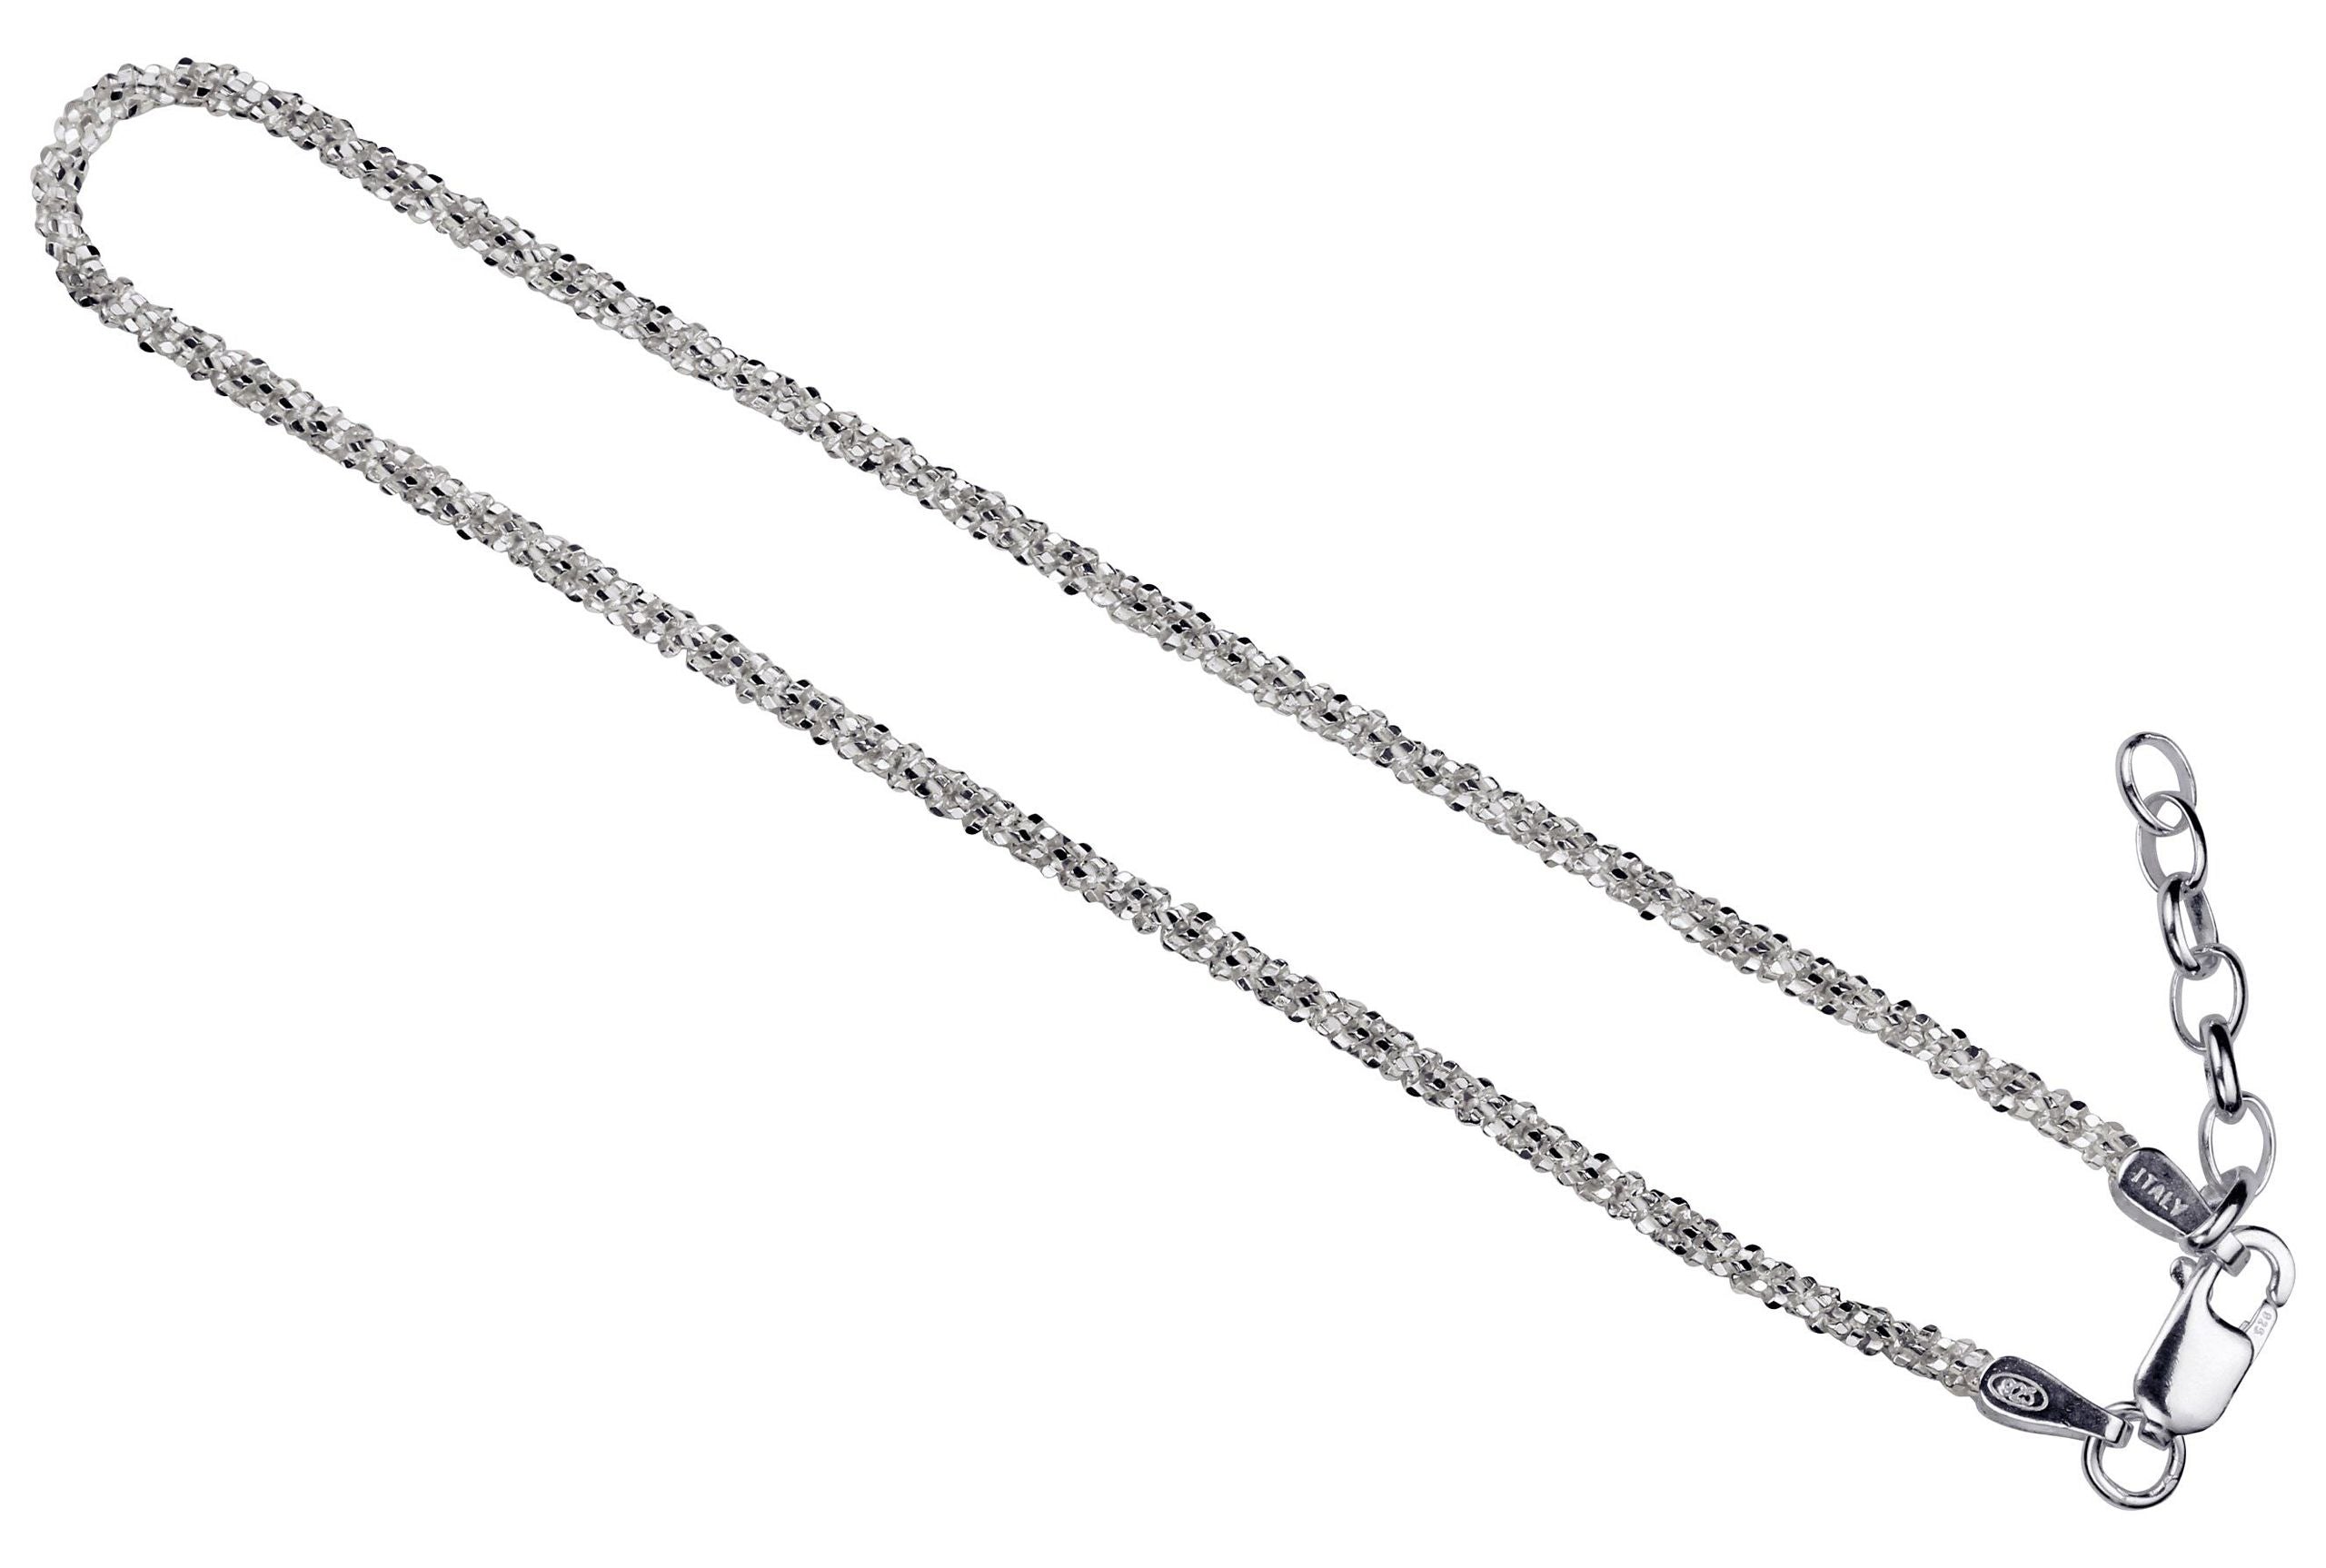 Ein Criss-Cross-Armband aus Silber für Damen mit einem geschmeidigen Geflecht und einer glänzend funkelnden Oberfläche.